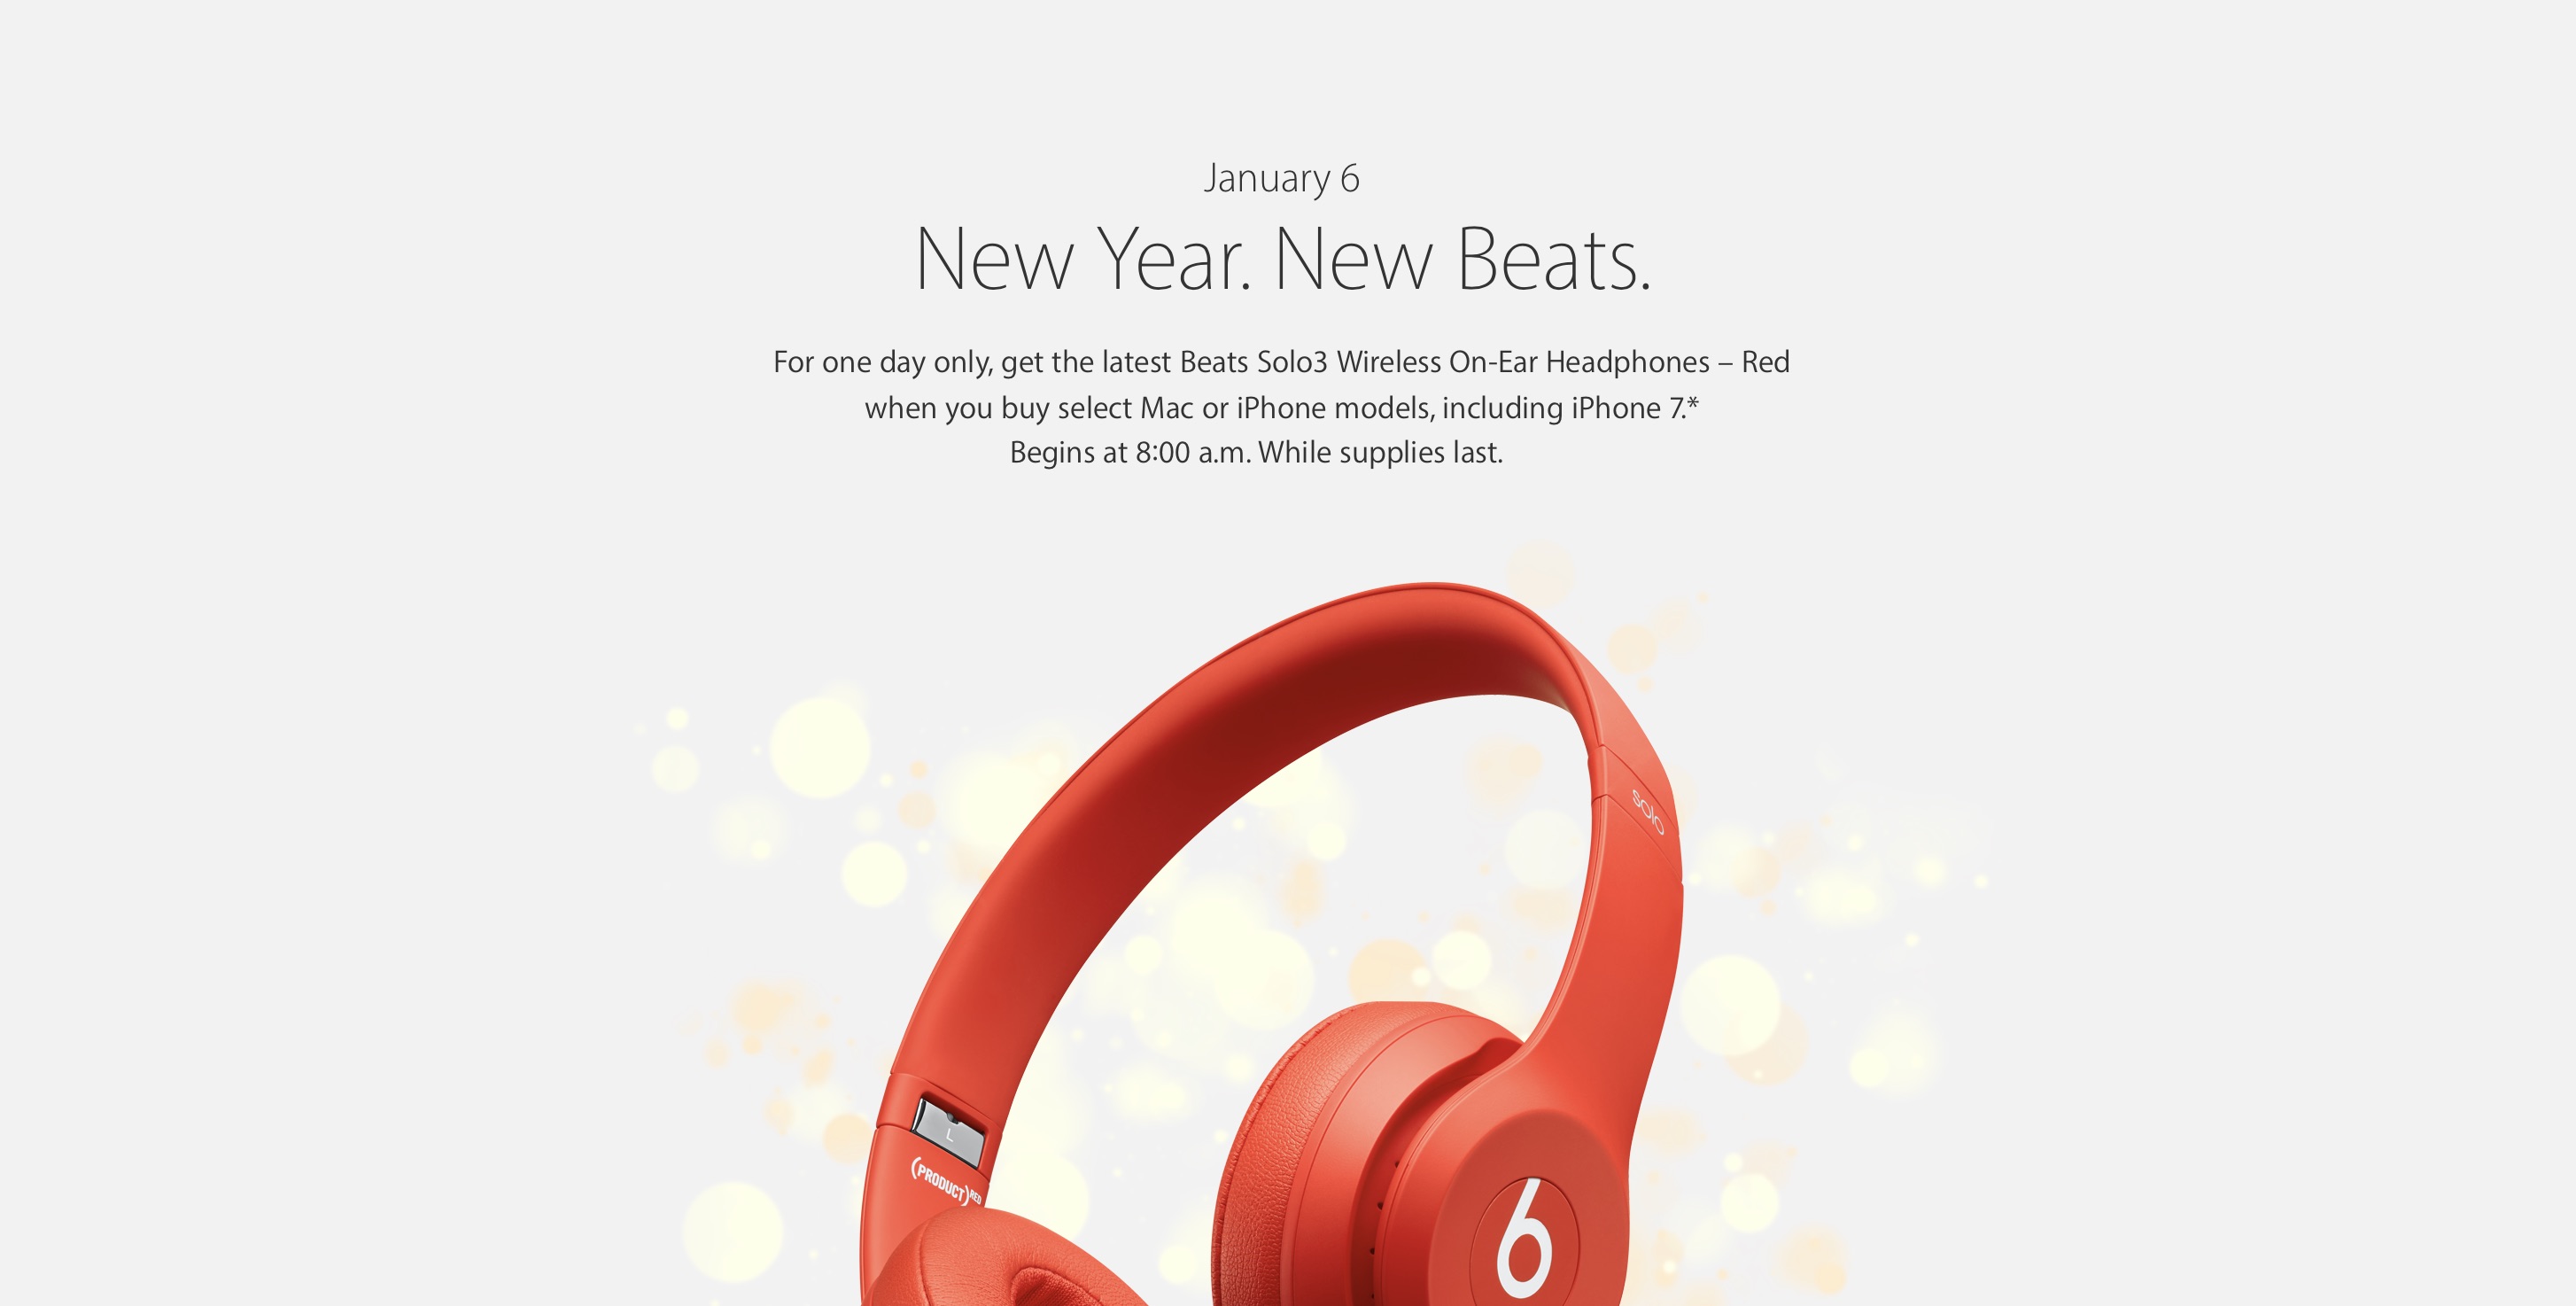 beats solo 3 wireless chinese new year